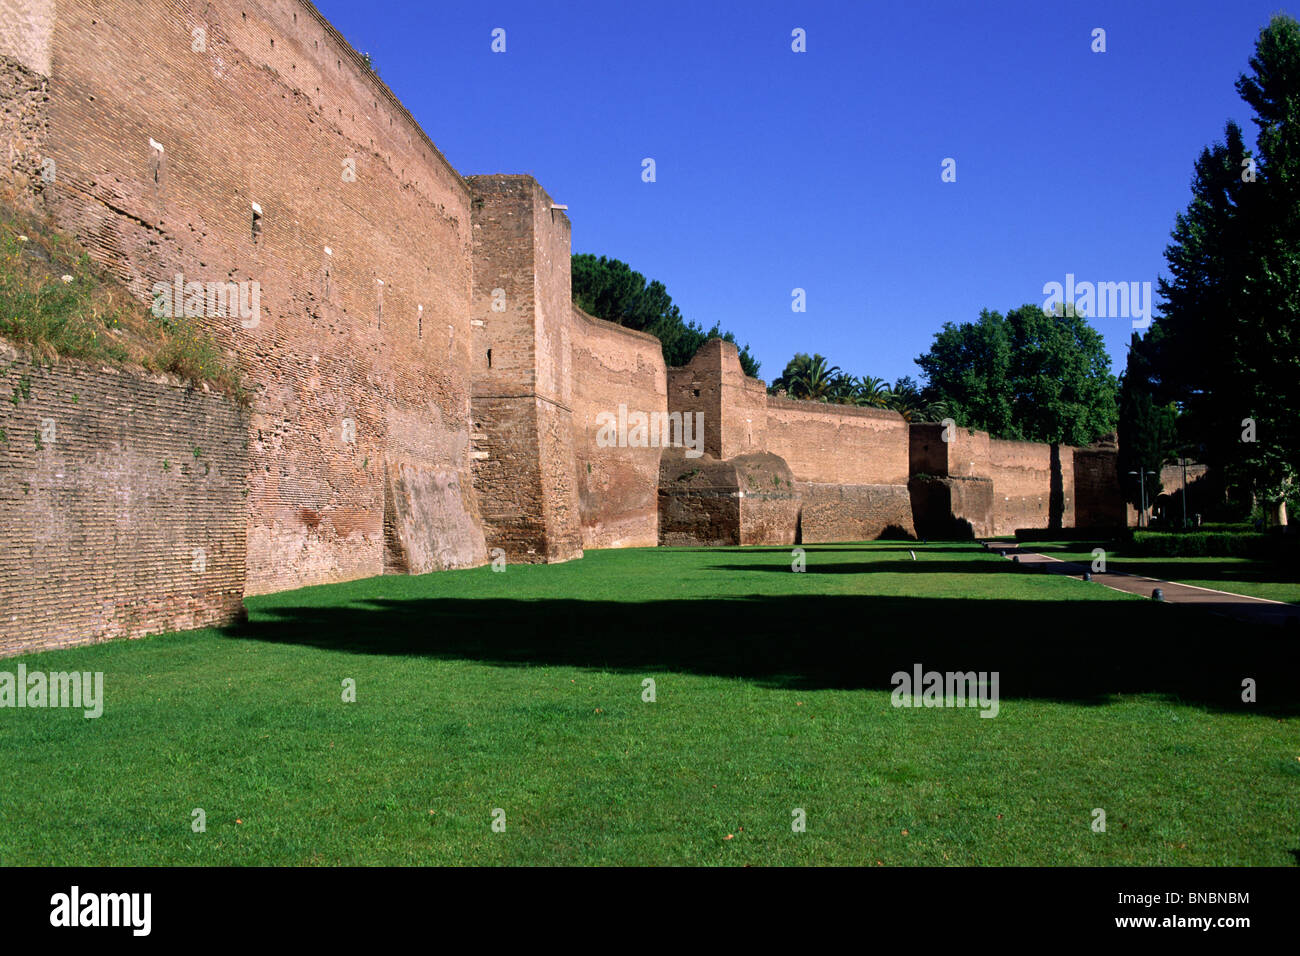 Italy, Rome, Aurelian Walls, ancient roman wall Stock Photo